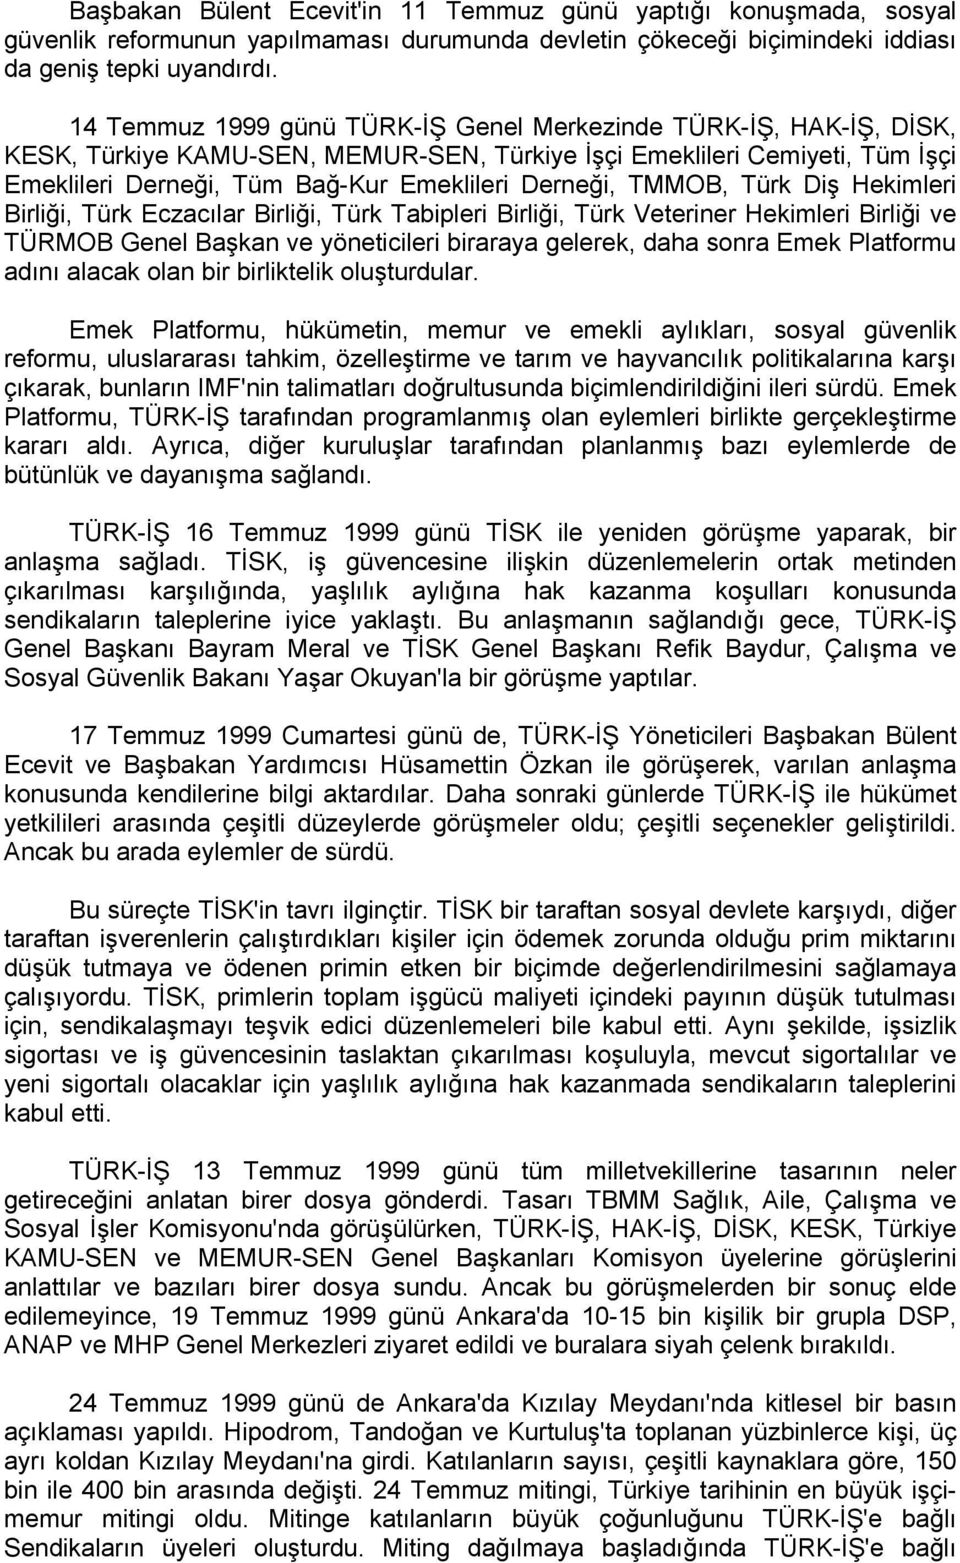 TMMOB, Türk Diş Hekimleri Birliği, Türk Eczacılar Birliği, Türk Tabipleri Birliği, Türk Veteriner Hekimleri Birliği ve TÜRMOB Genel Başkan ve yöneticileri biraraya gelerek, daha sonra Emek Platformu